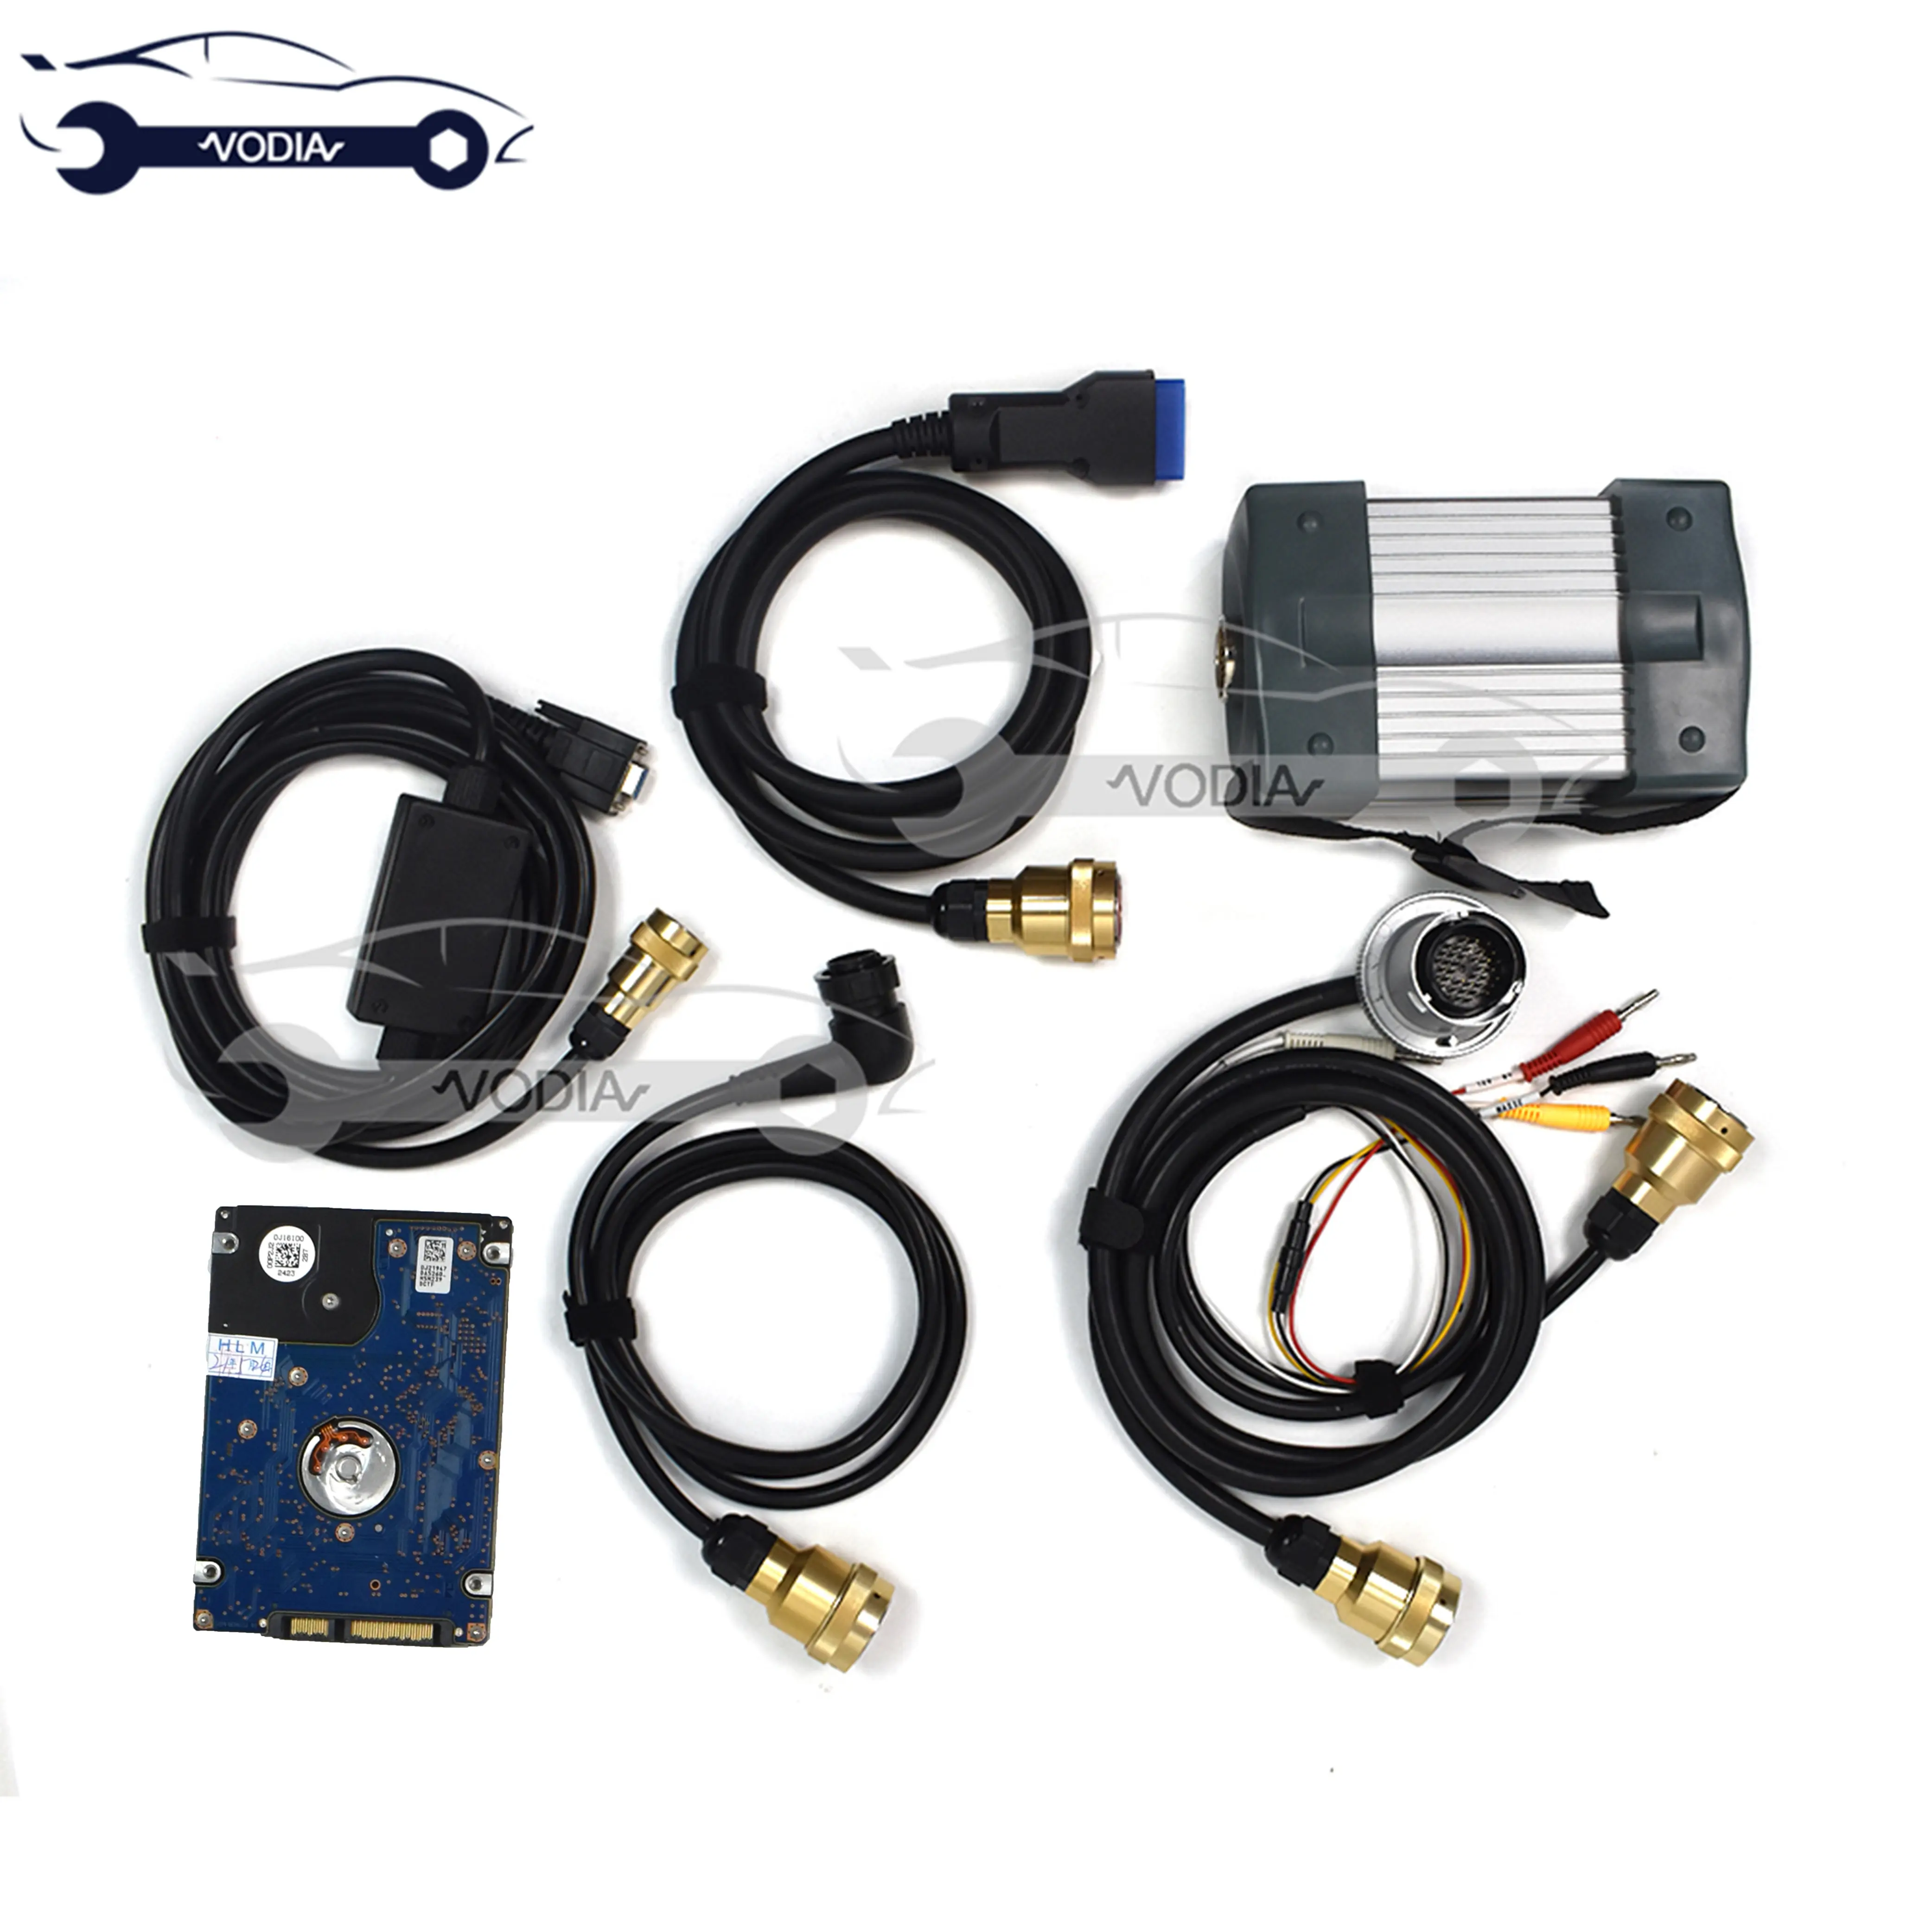 MB yıldız C3 tam çip kabloları ile otomatik teşhis aracı ile HDD MB yıldız C3 desteği arabalar ve kamyonlar için